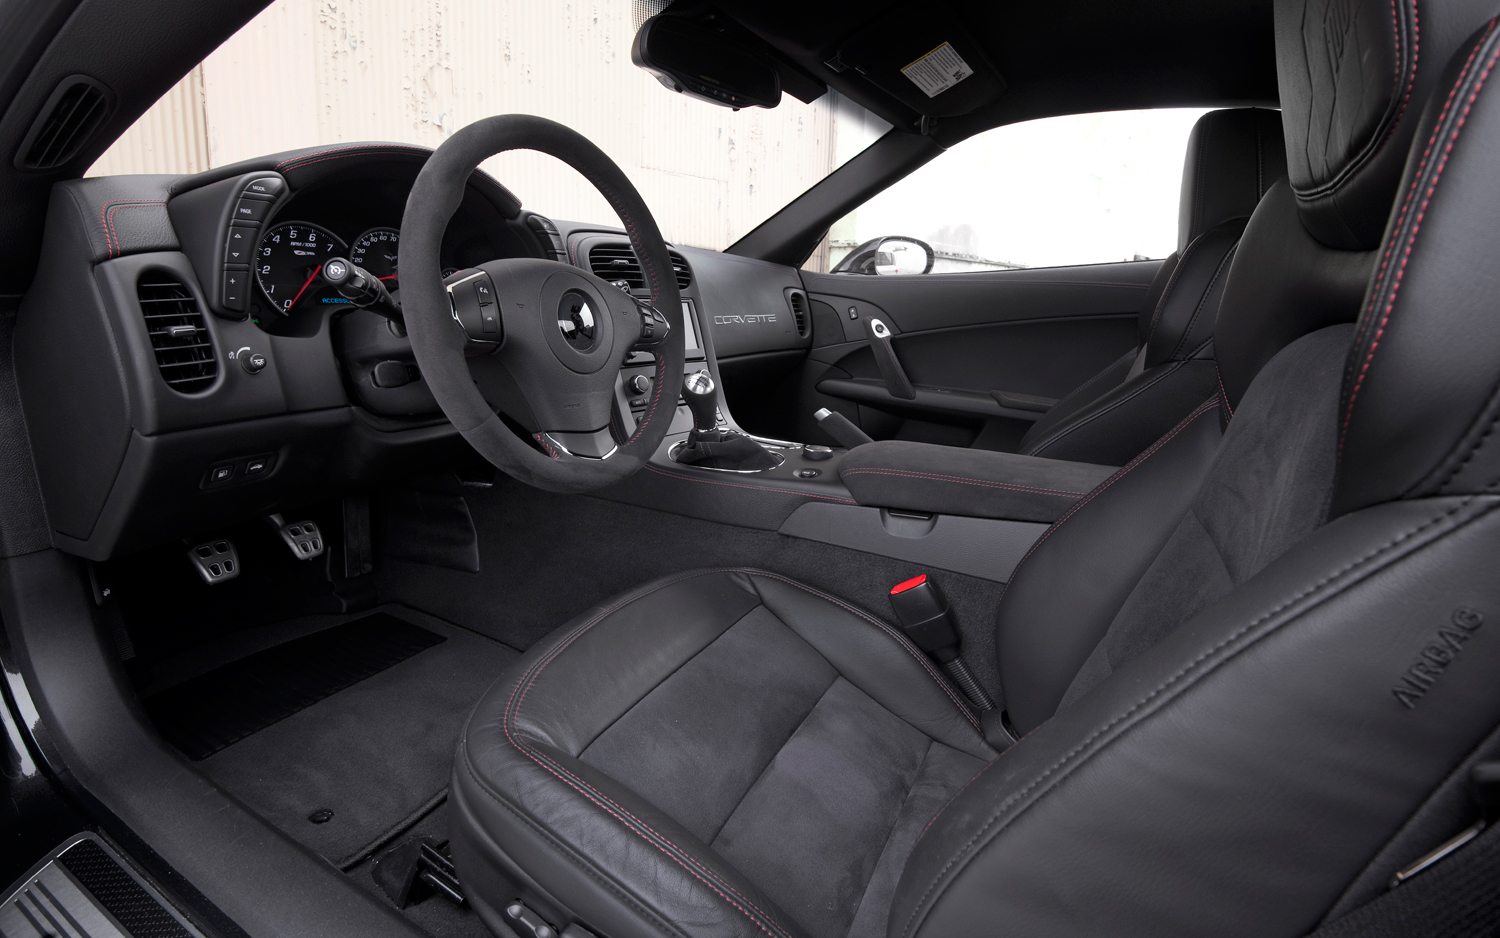 2012 Corvette Interior